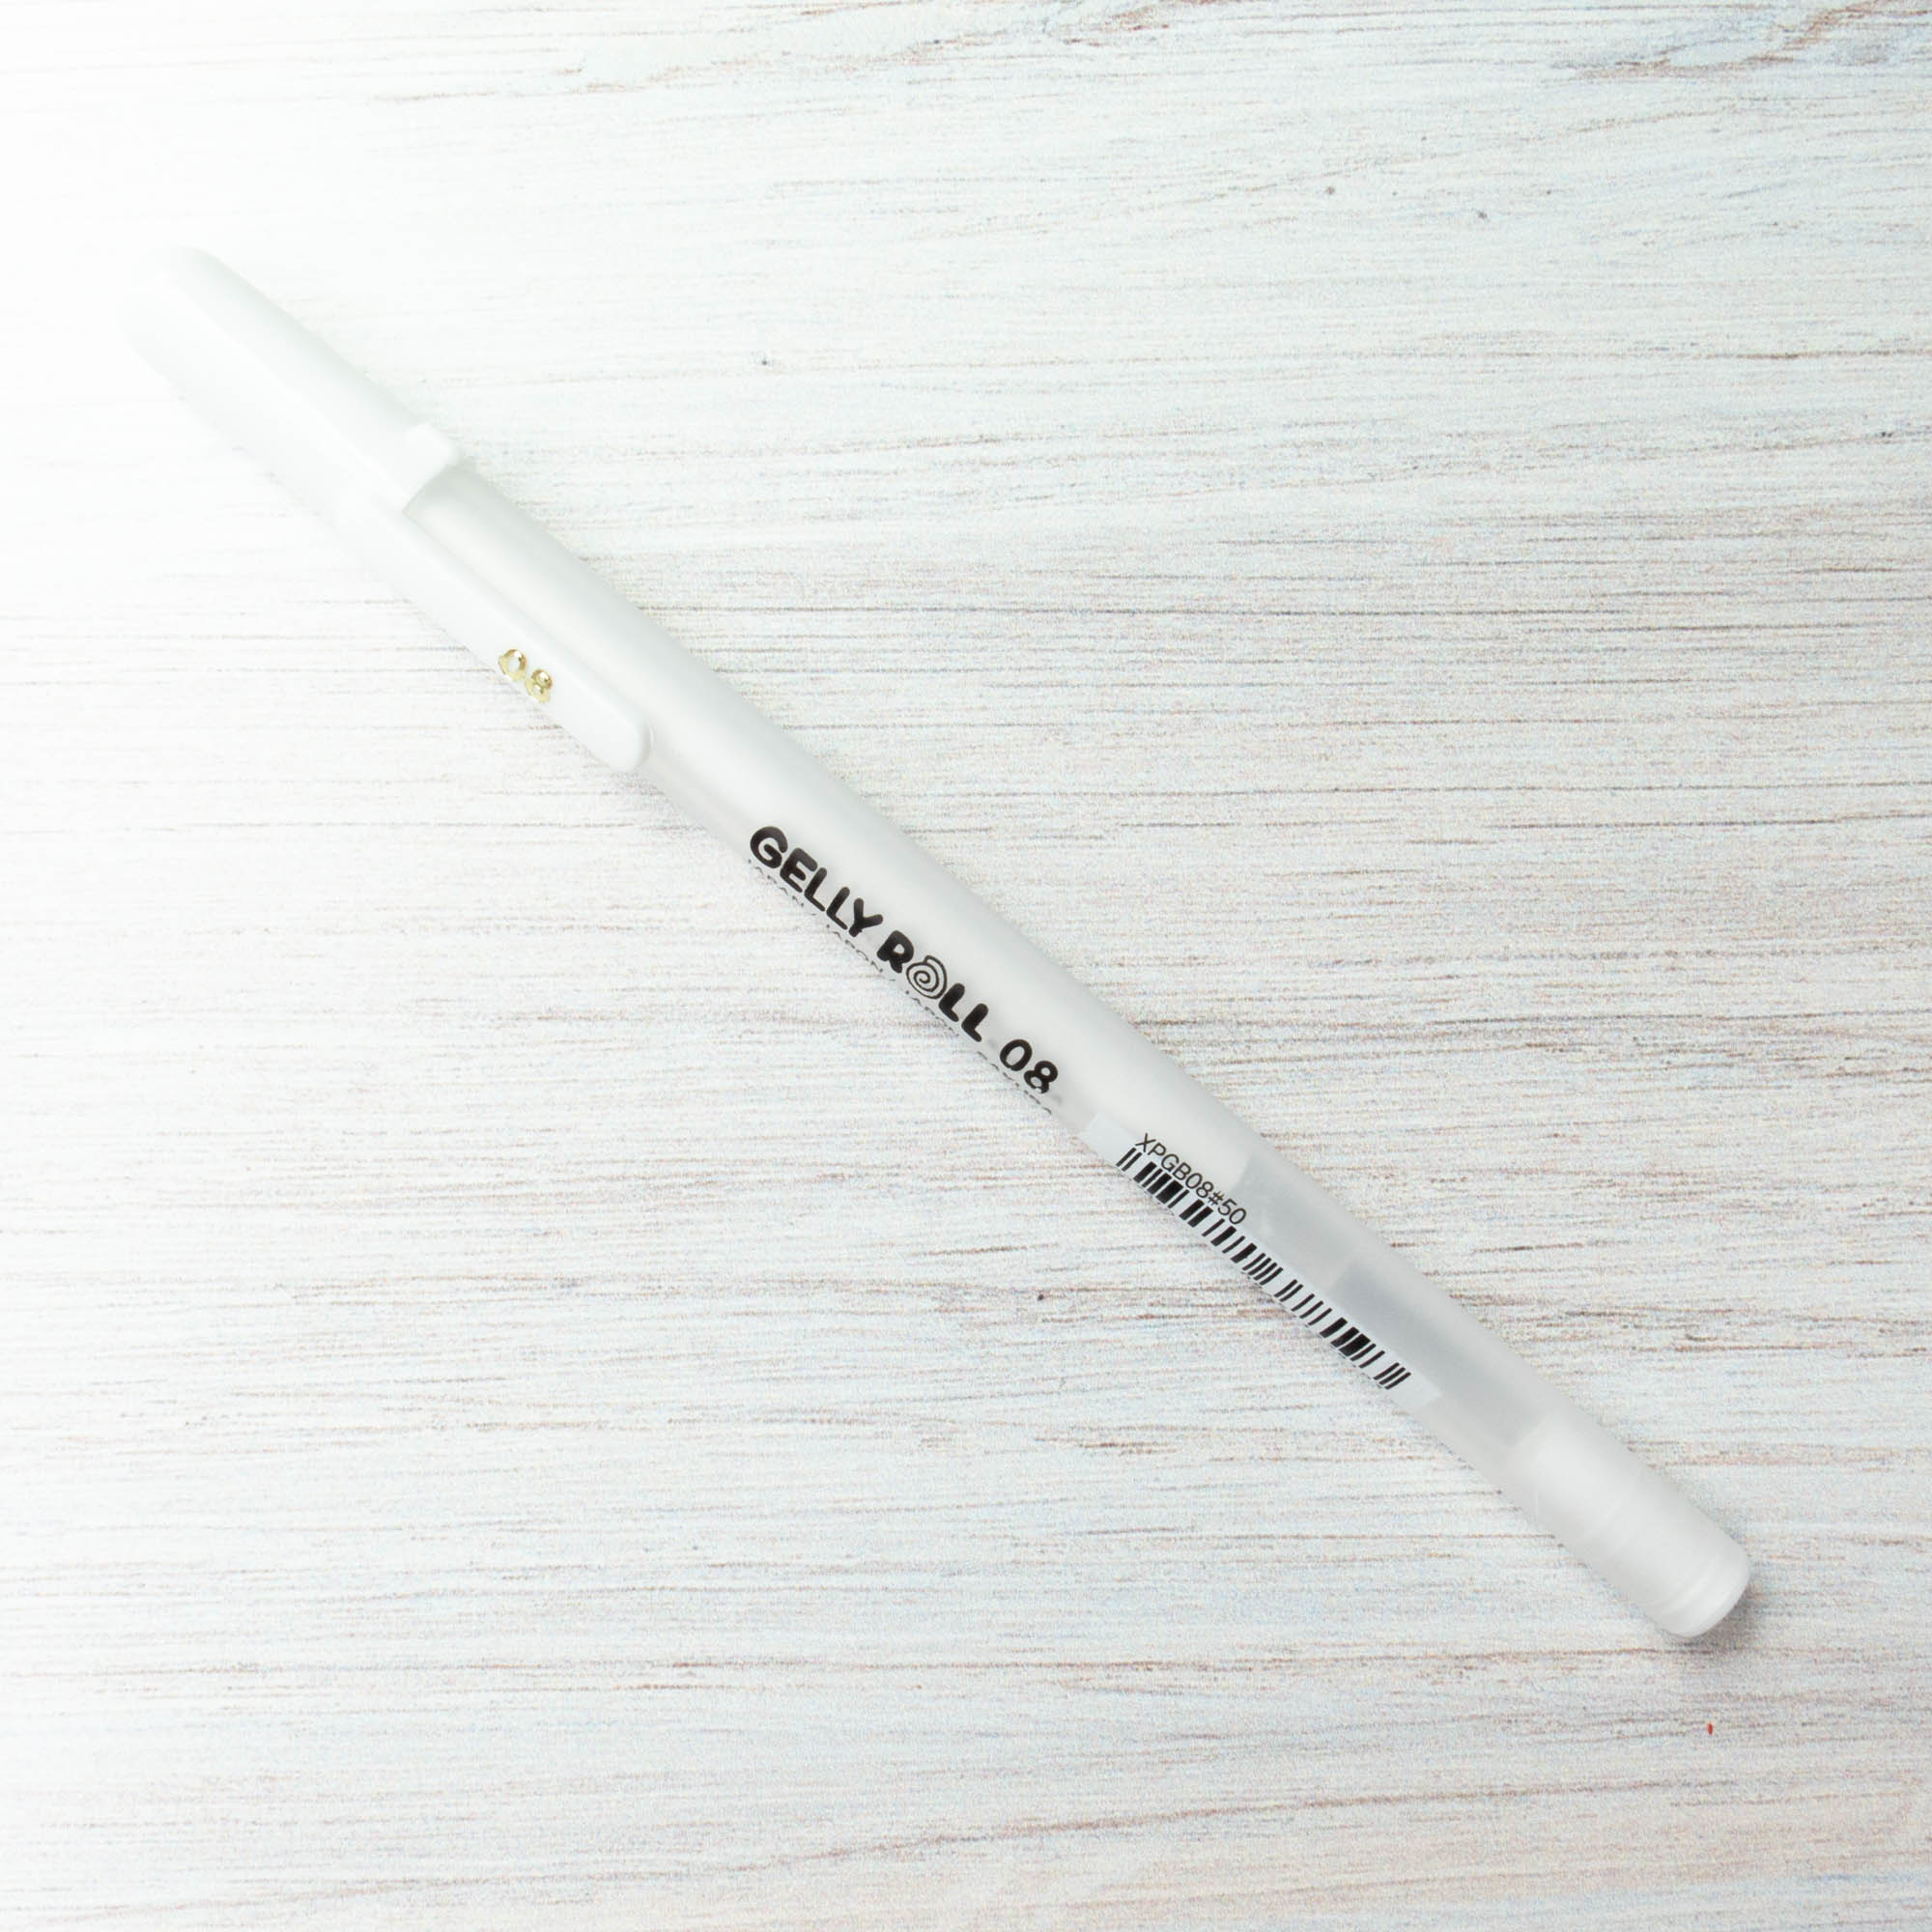 BEST) White Gel Pen? / Sakura Gelly Roll White Gel Pen Review